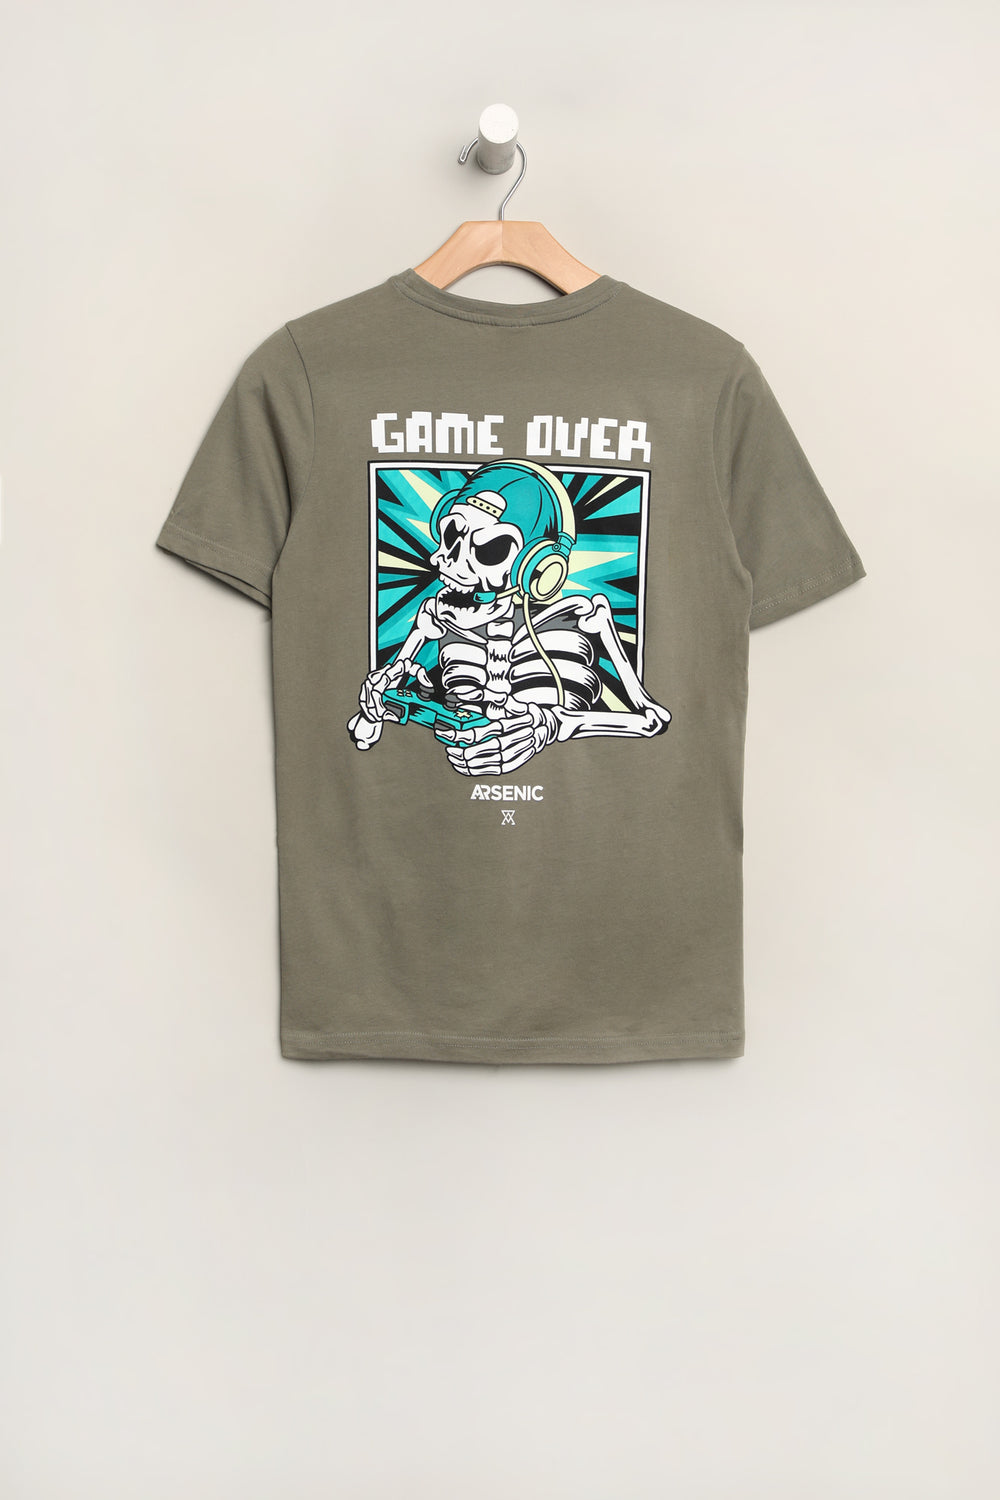 T-Shirt Imprimé Game Over Arsenic Junior T-Shirt Imprimé Game Over Arsenic Junior